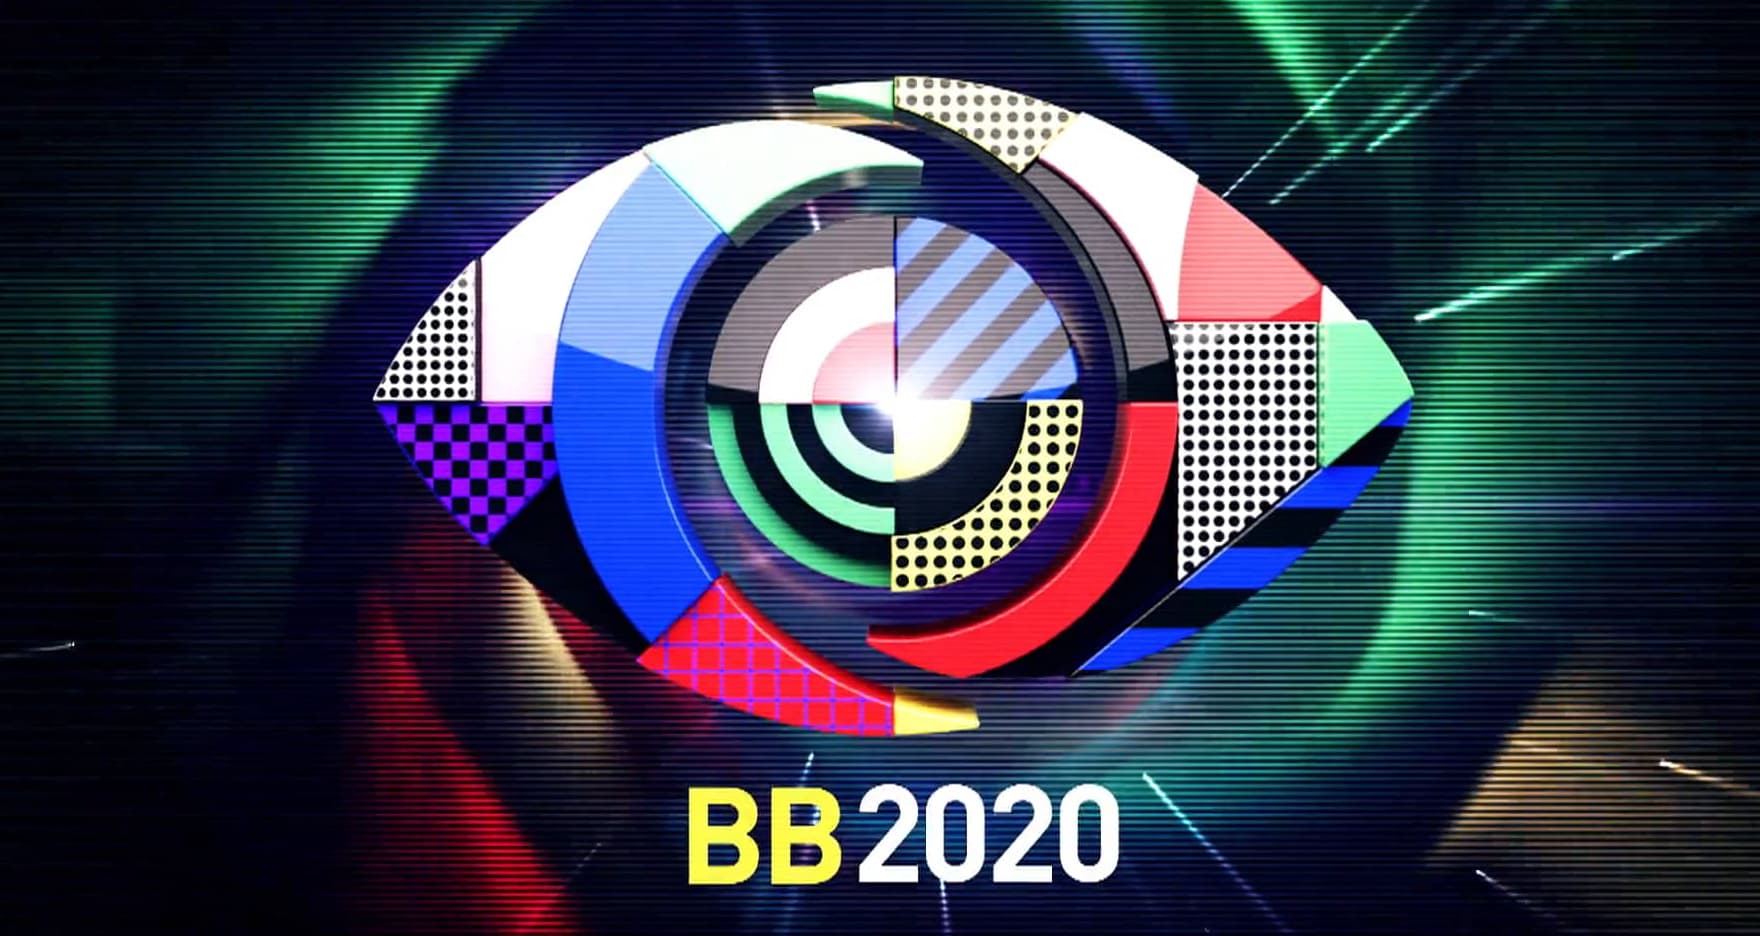 Big Brother 2020 Descubra Tudo Aquilo Que Já Se Sabe Sobre A Nova Edição Do 'Big Brother'